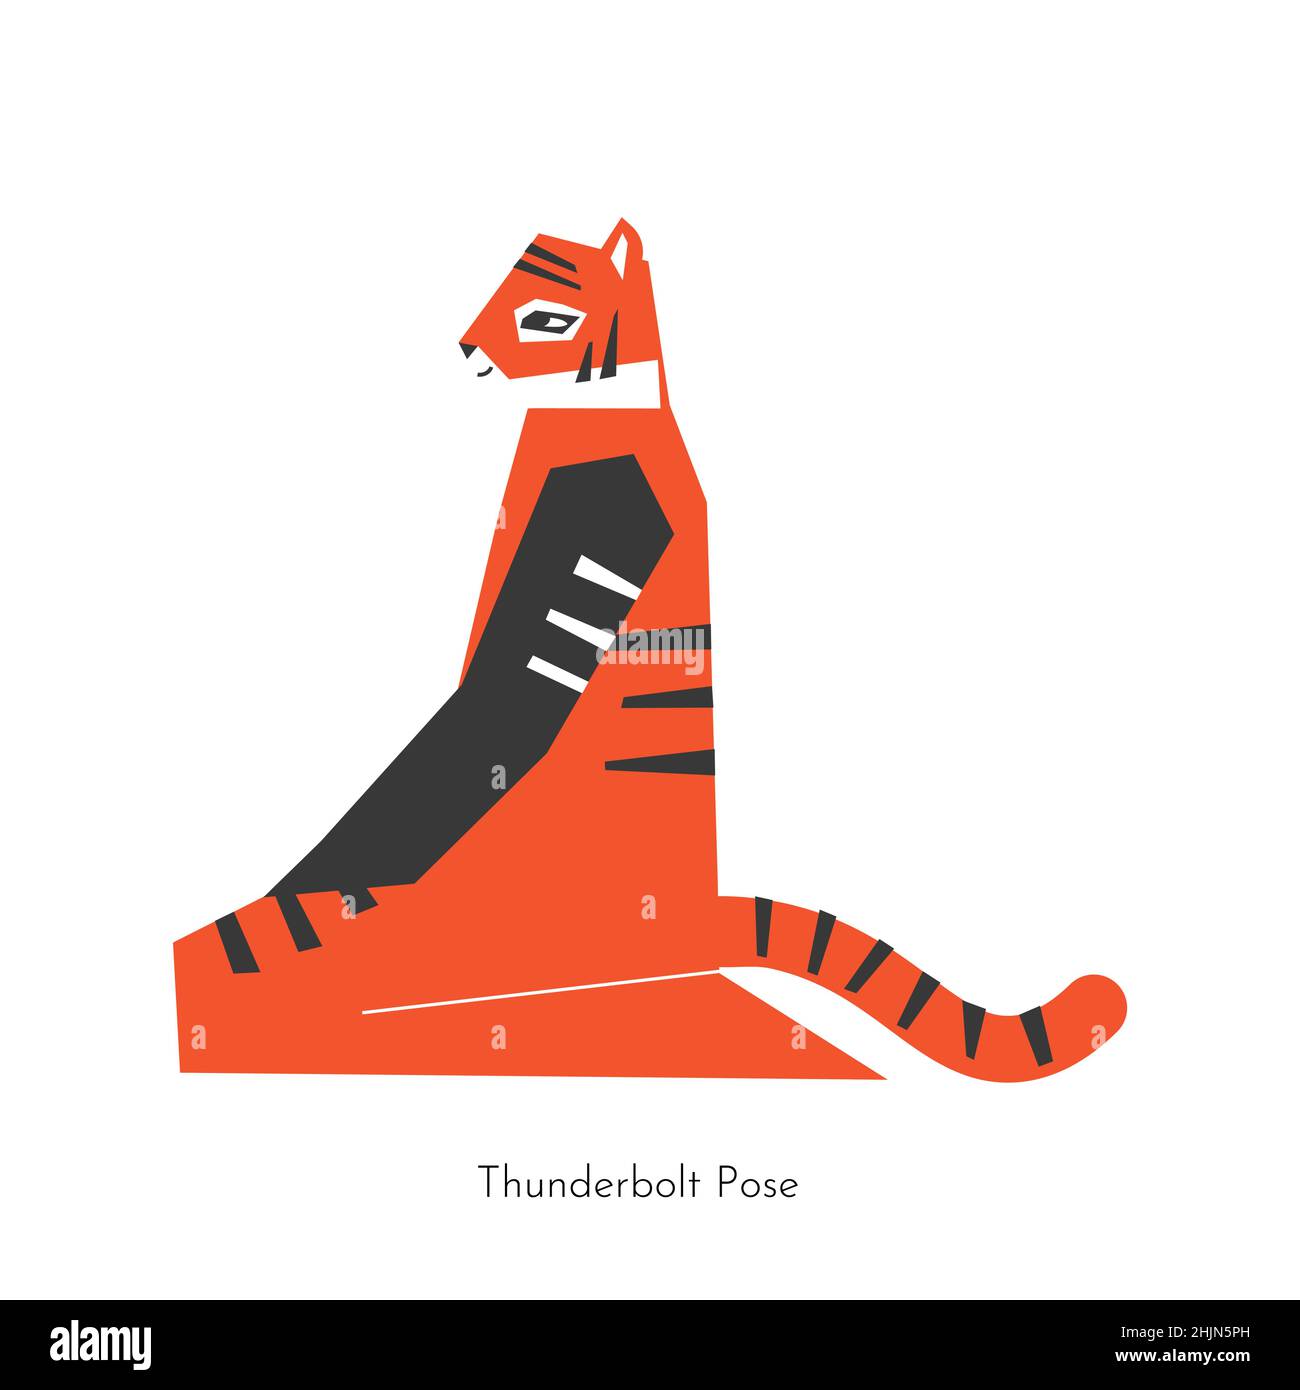 Vektor flache Illustration mit Meditation Tier Charakter. Chinesischer Tiger lernt entspannende Haltung und tut Thunderbolt Pose bei Yoga-Praxis. Einfache exe Stock Vektor